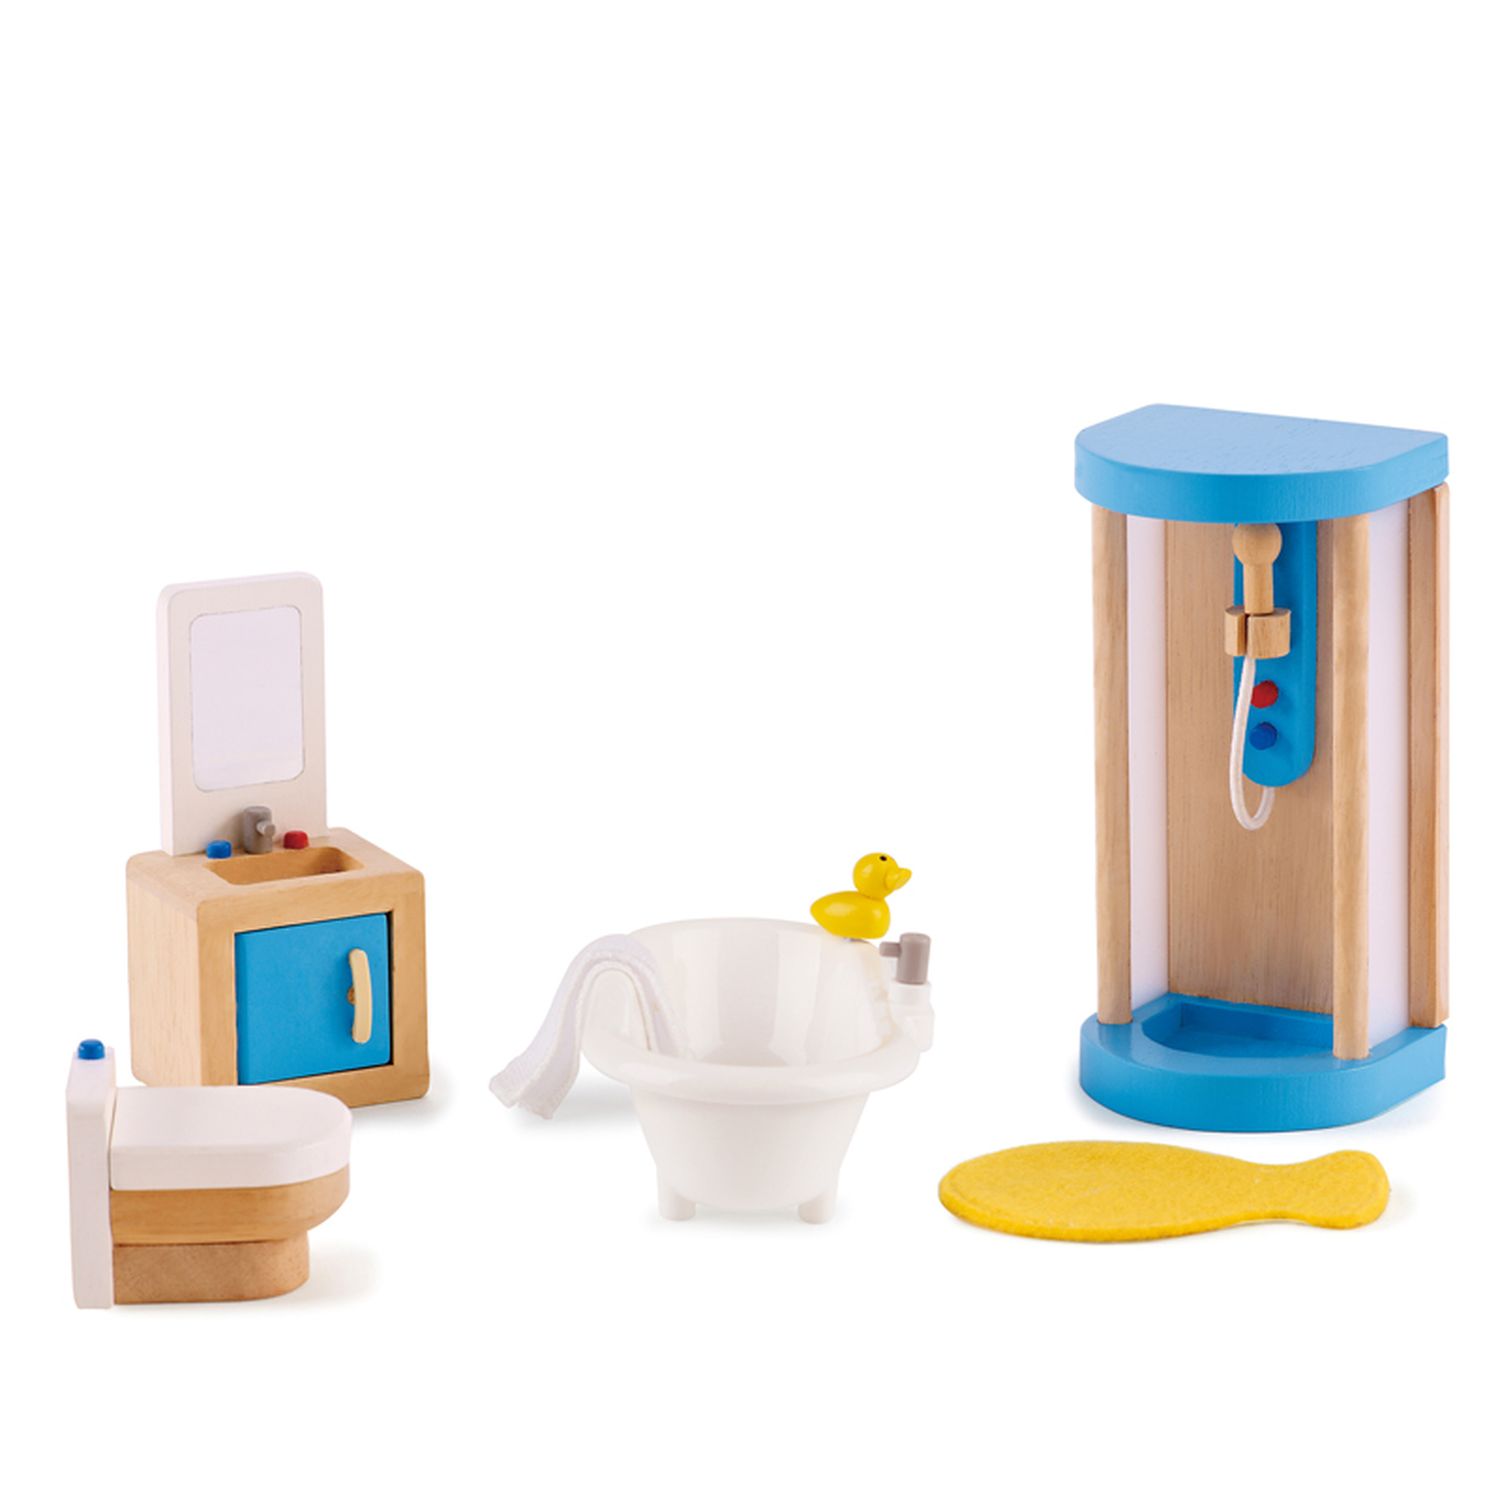 Мебель для домика Ванная комната Hape E3451_HP чудо ванная деревянная мебель для кукольного домика pollika